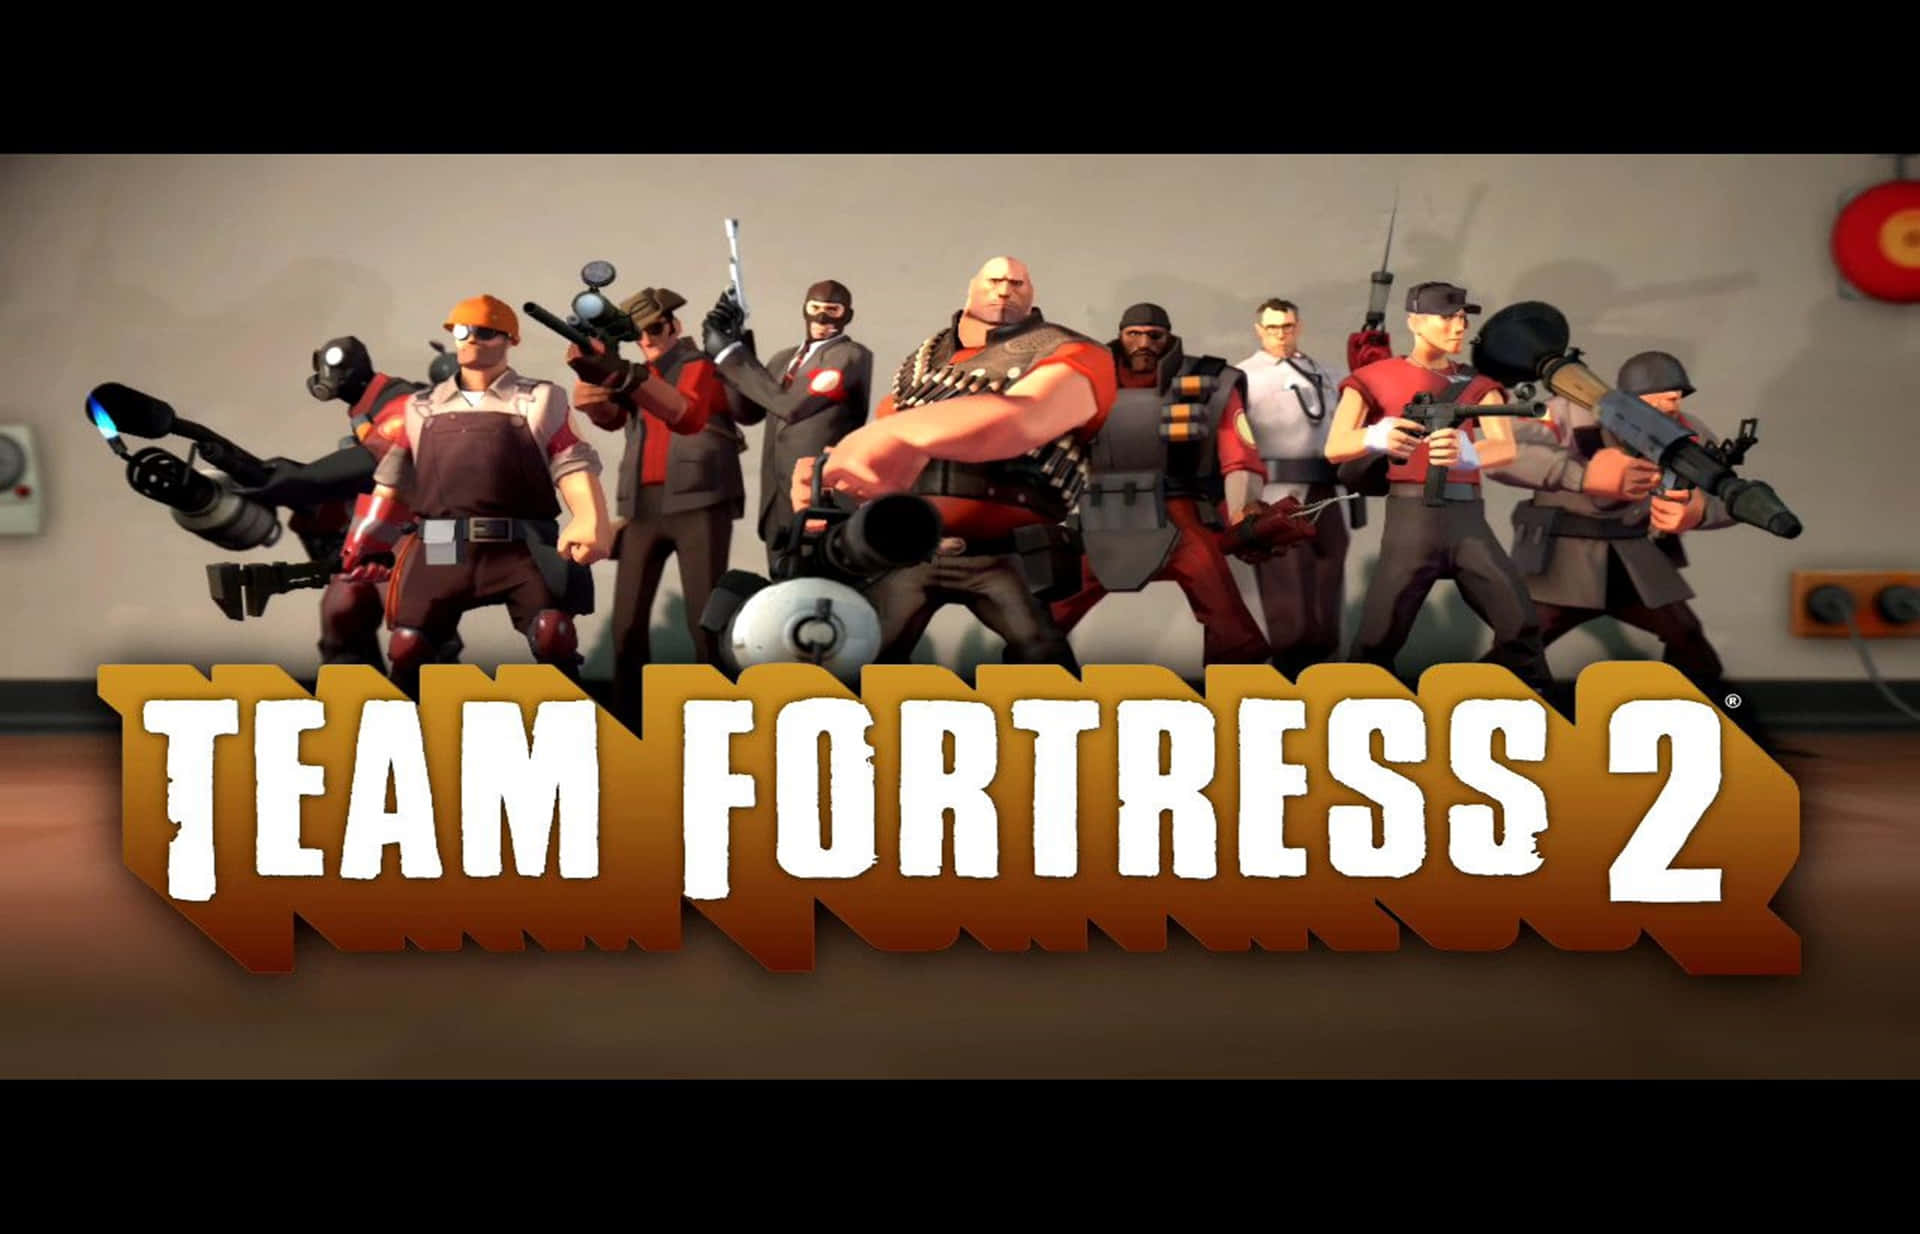 2440x1440bakgrundsbild För Team Fortress 2-datorspel.